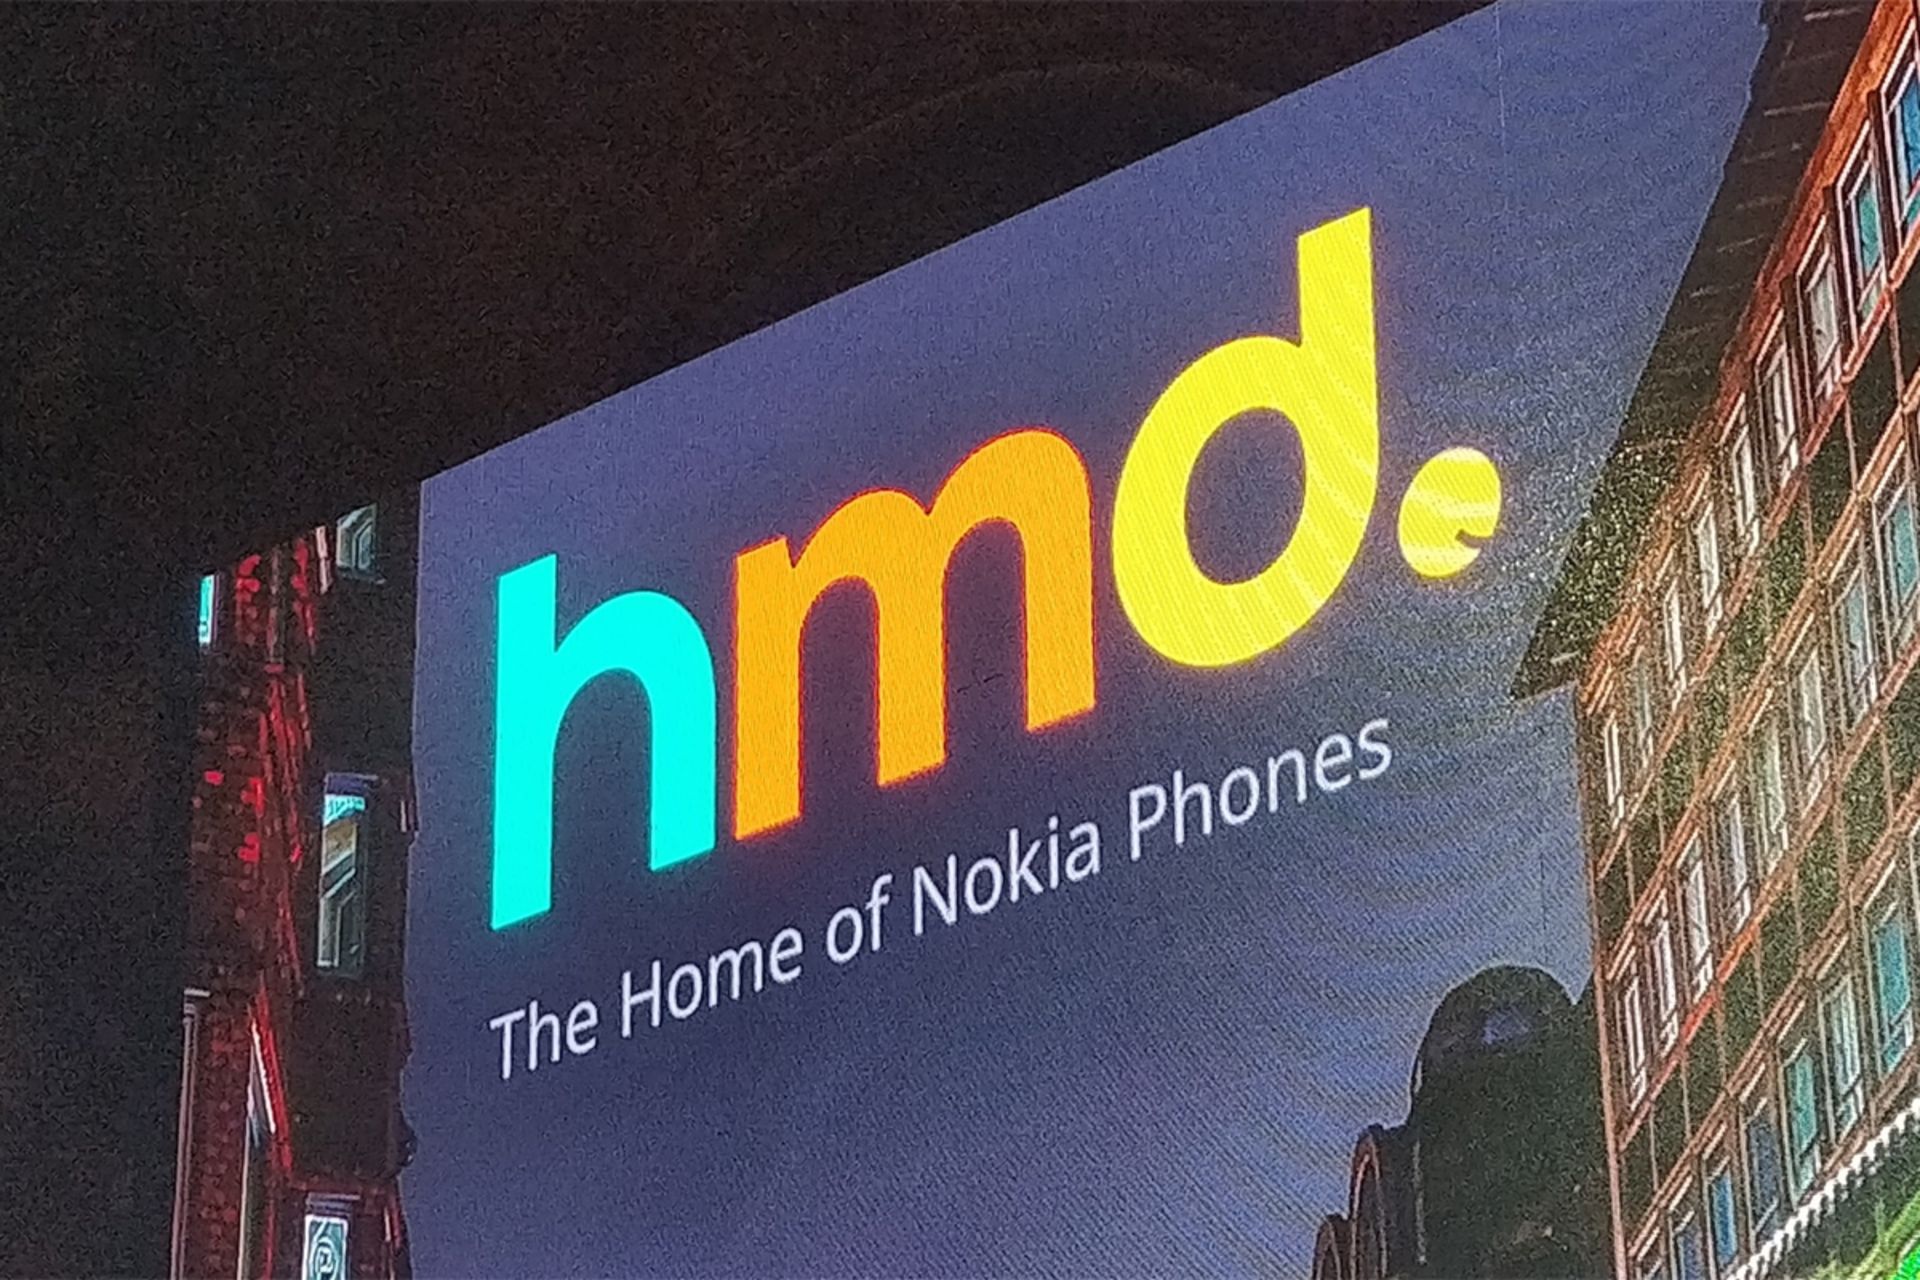 لوگو اچ ام دی گلوبال / HMD Global سازنده گوشی نوکیا / Nokia روی بنر تبلیغاتی